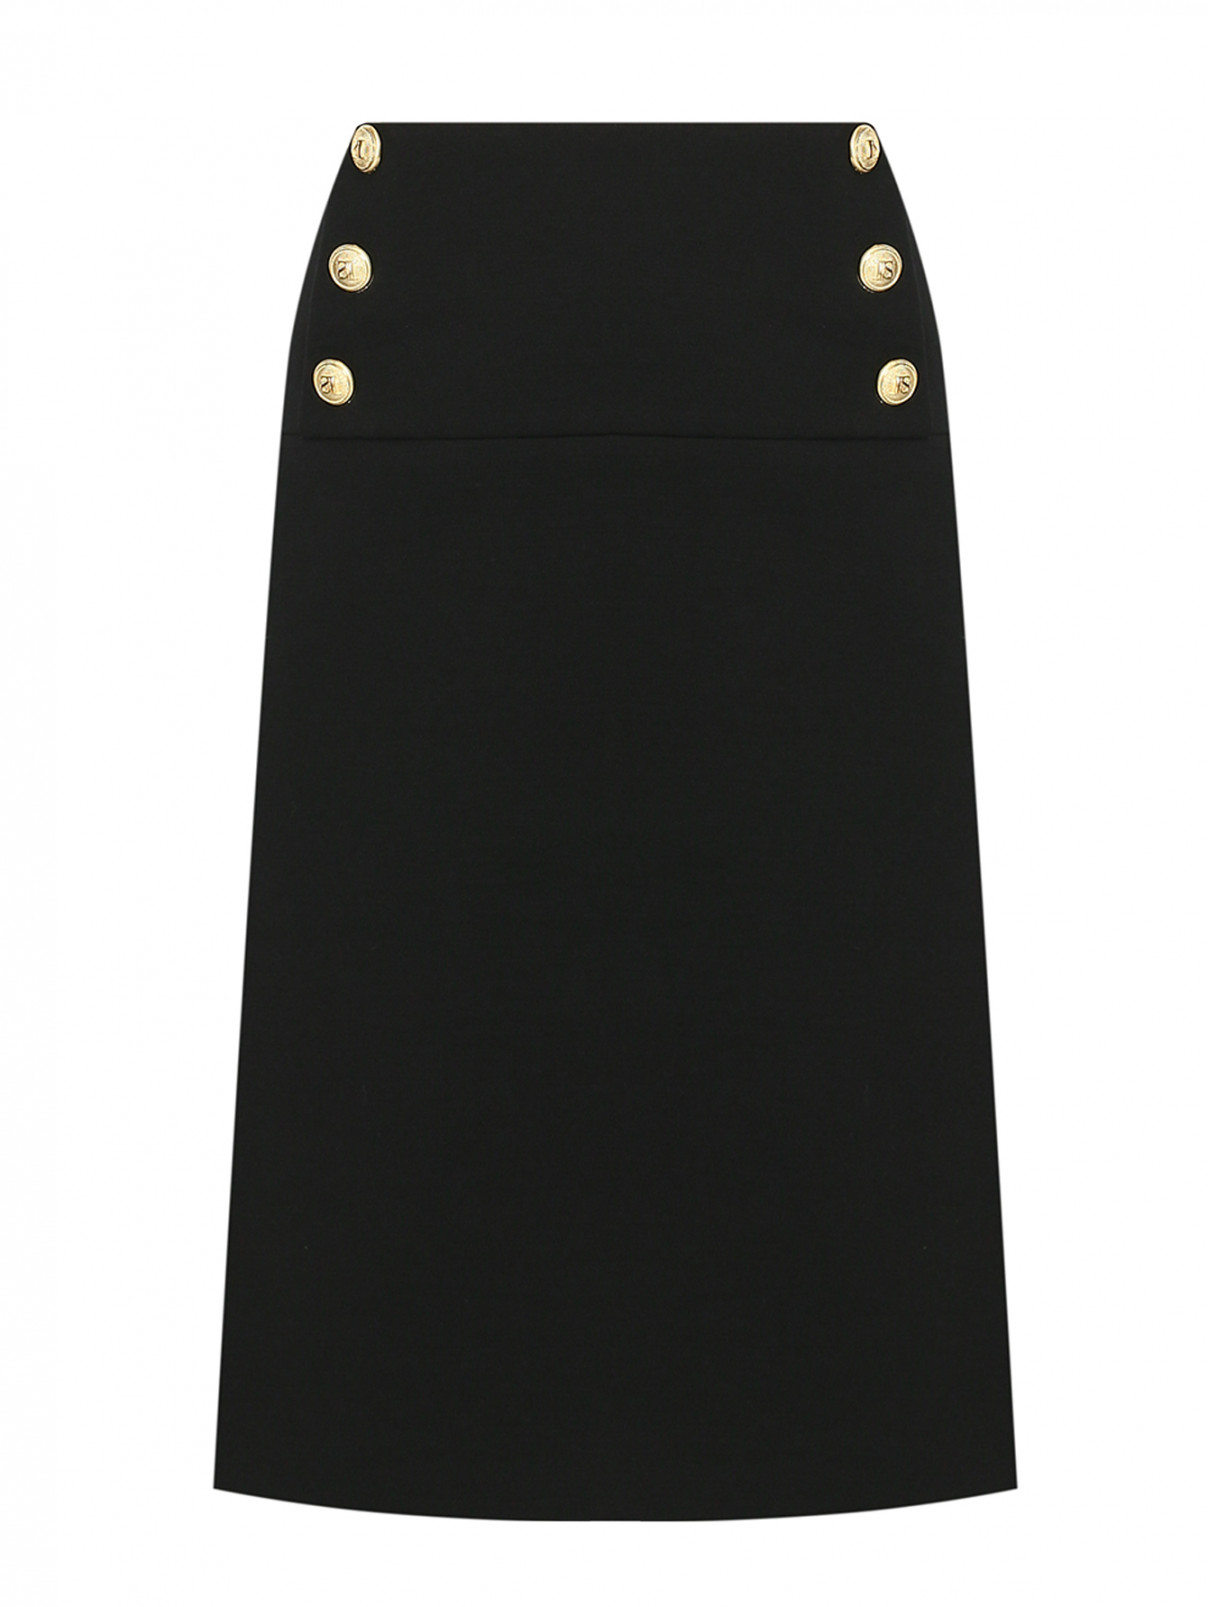 Однотонная юбка из шерсти с декоративными пуговицами Luisa Spagnoli  –  Общий вид  – Цвет:  Черный